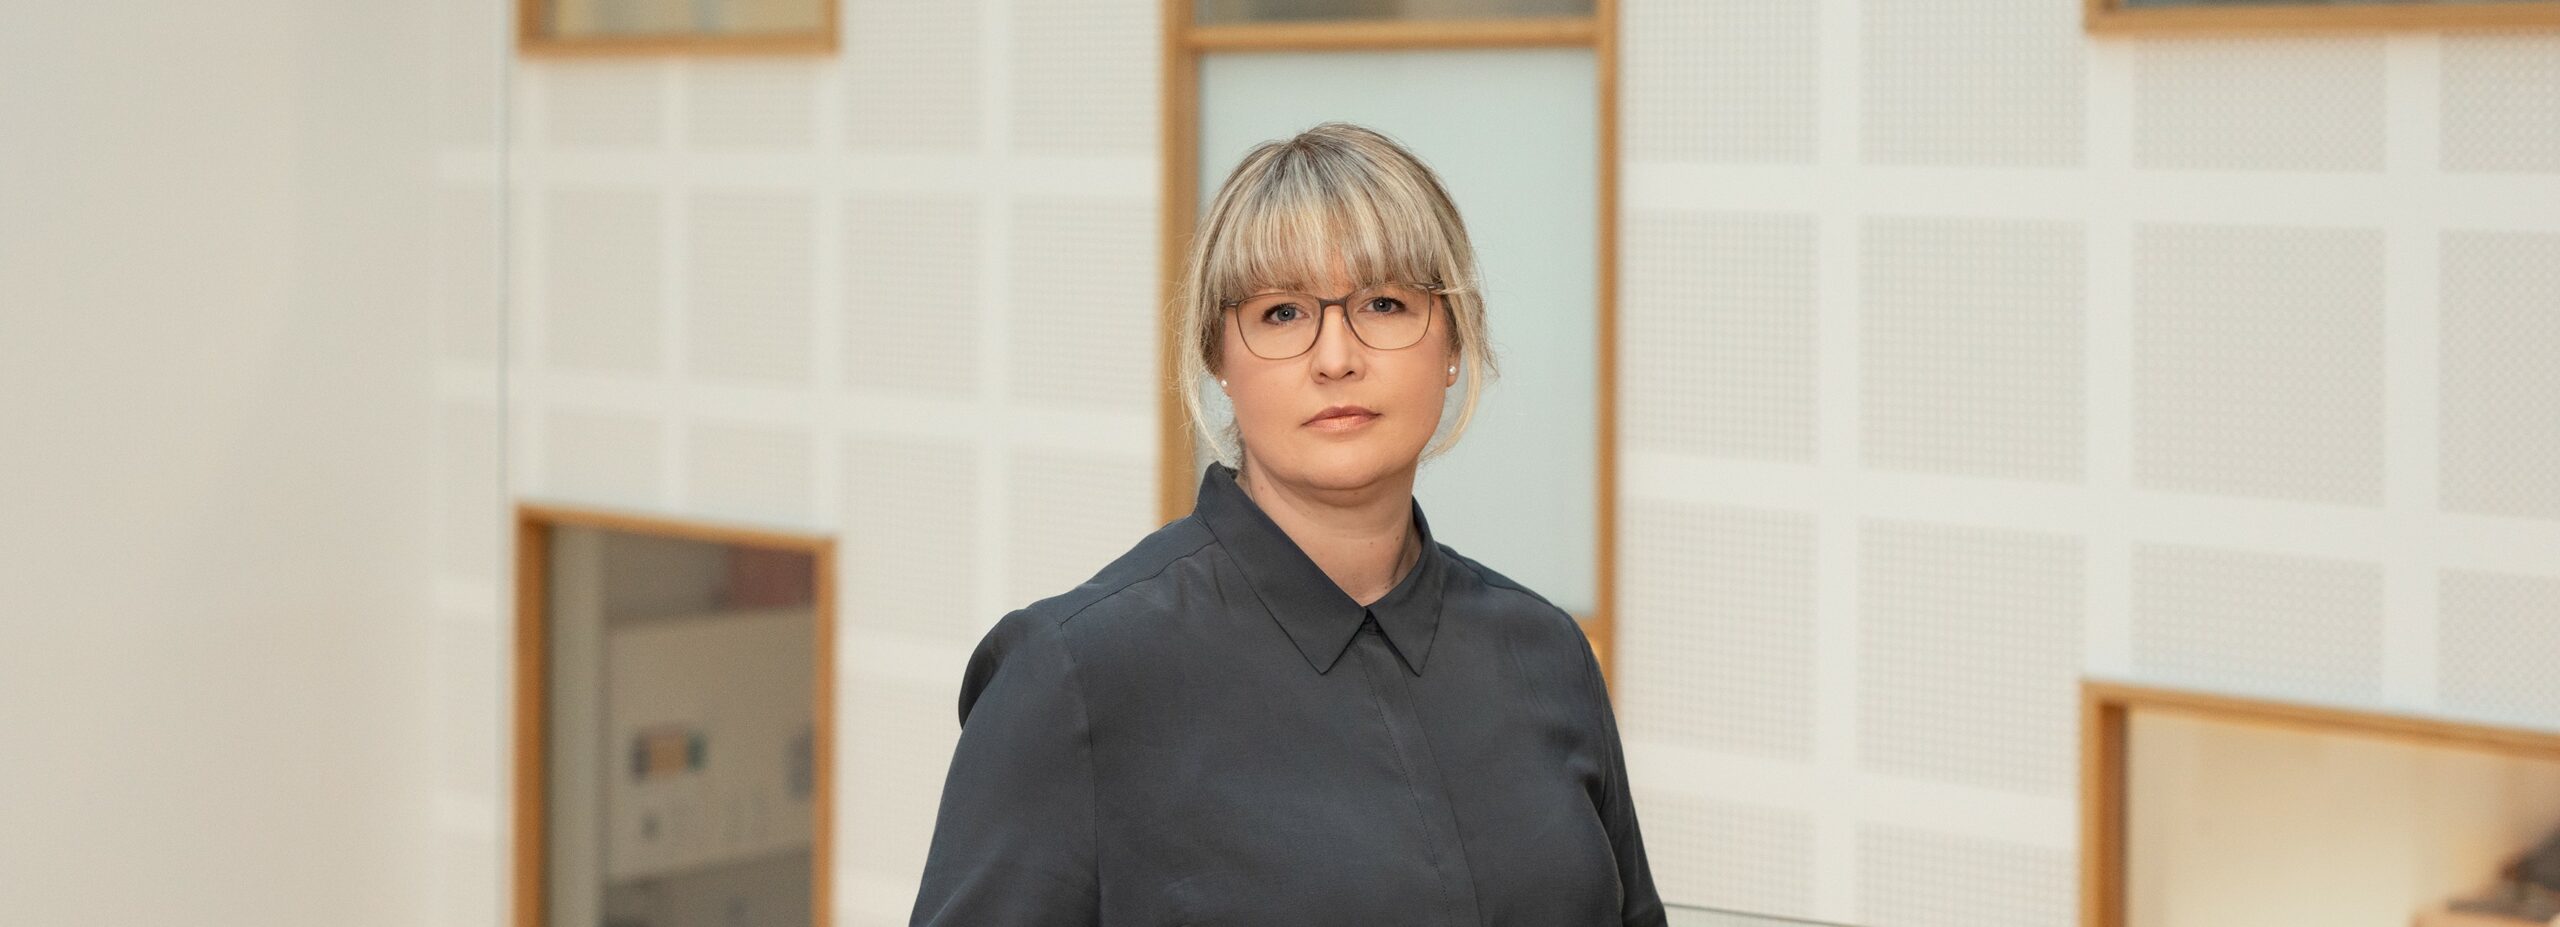 Bilde av Monica Alisøy Kjelsnes, jurist i Lotteritilsynet